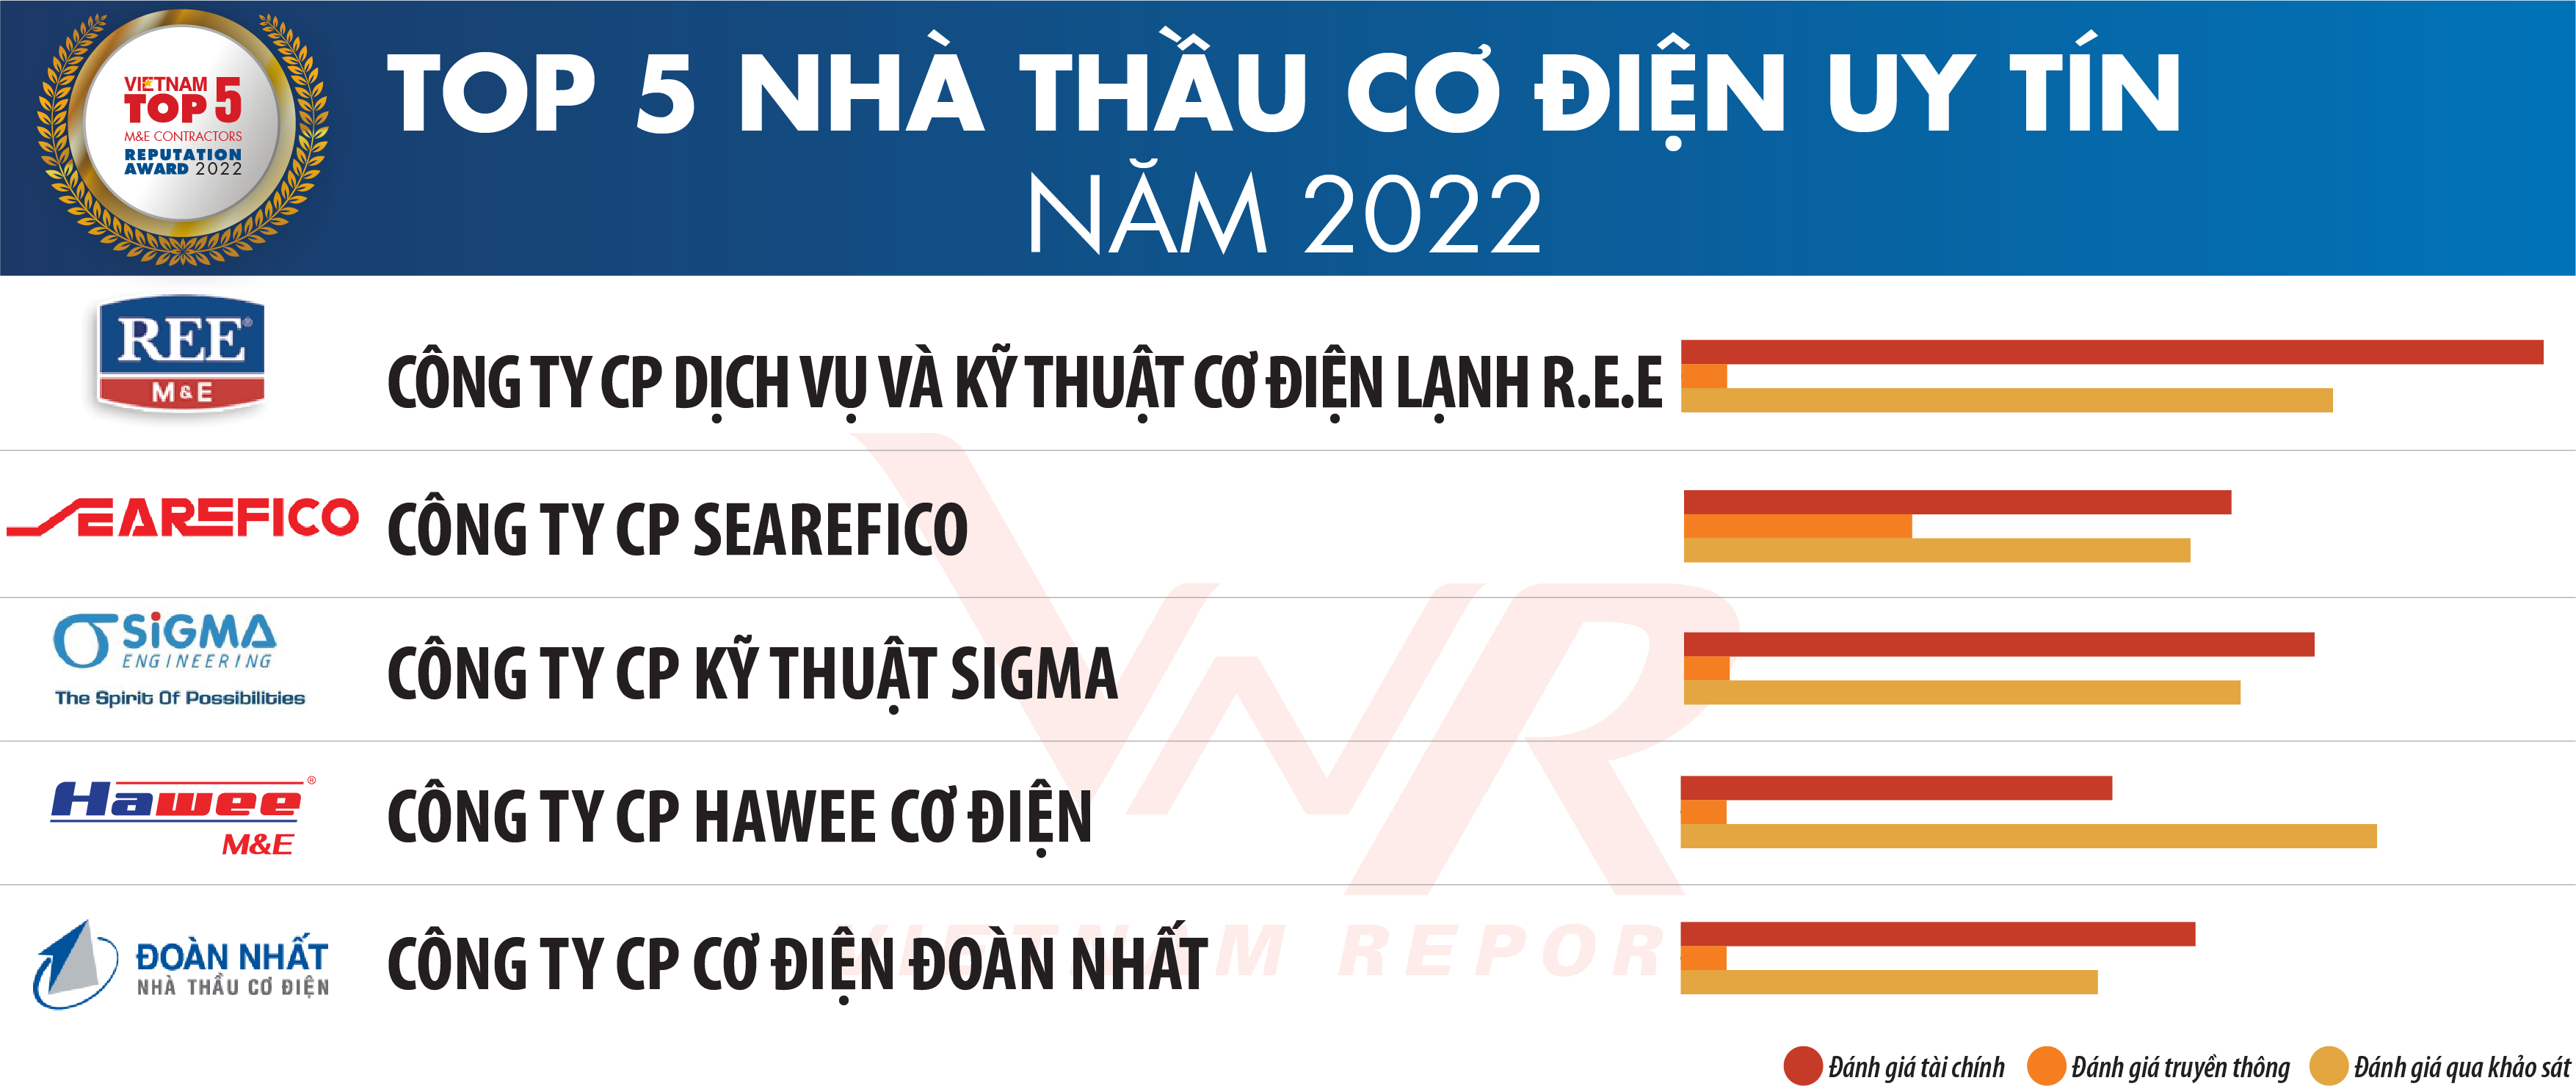 Top 5 Nhà thầu Cơ điện Việt Nam uy tín năm 2022